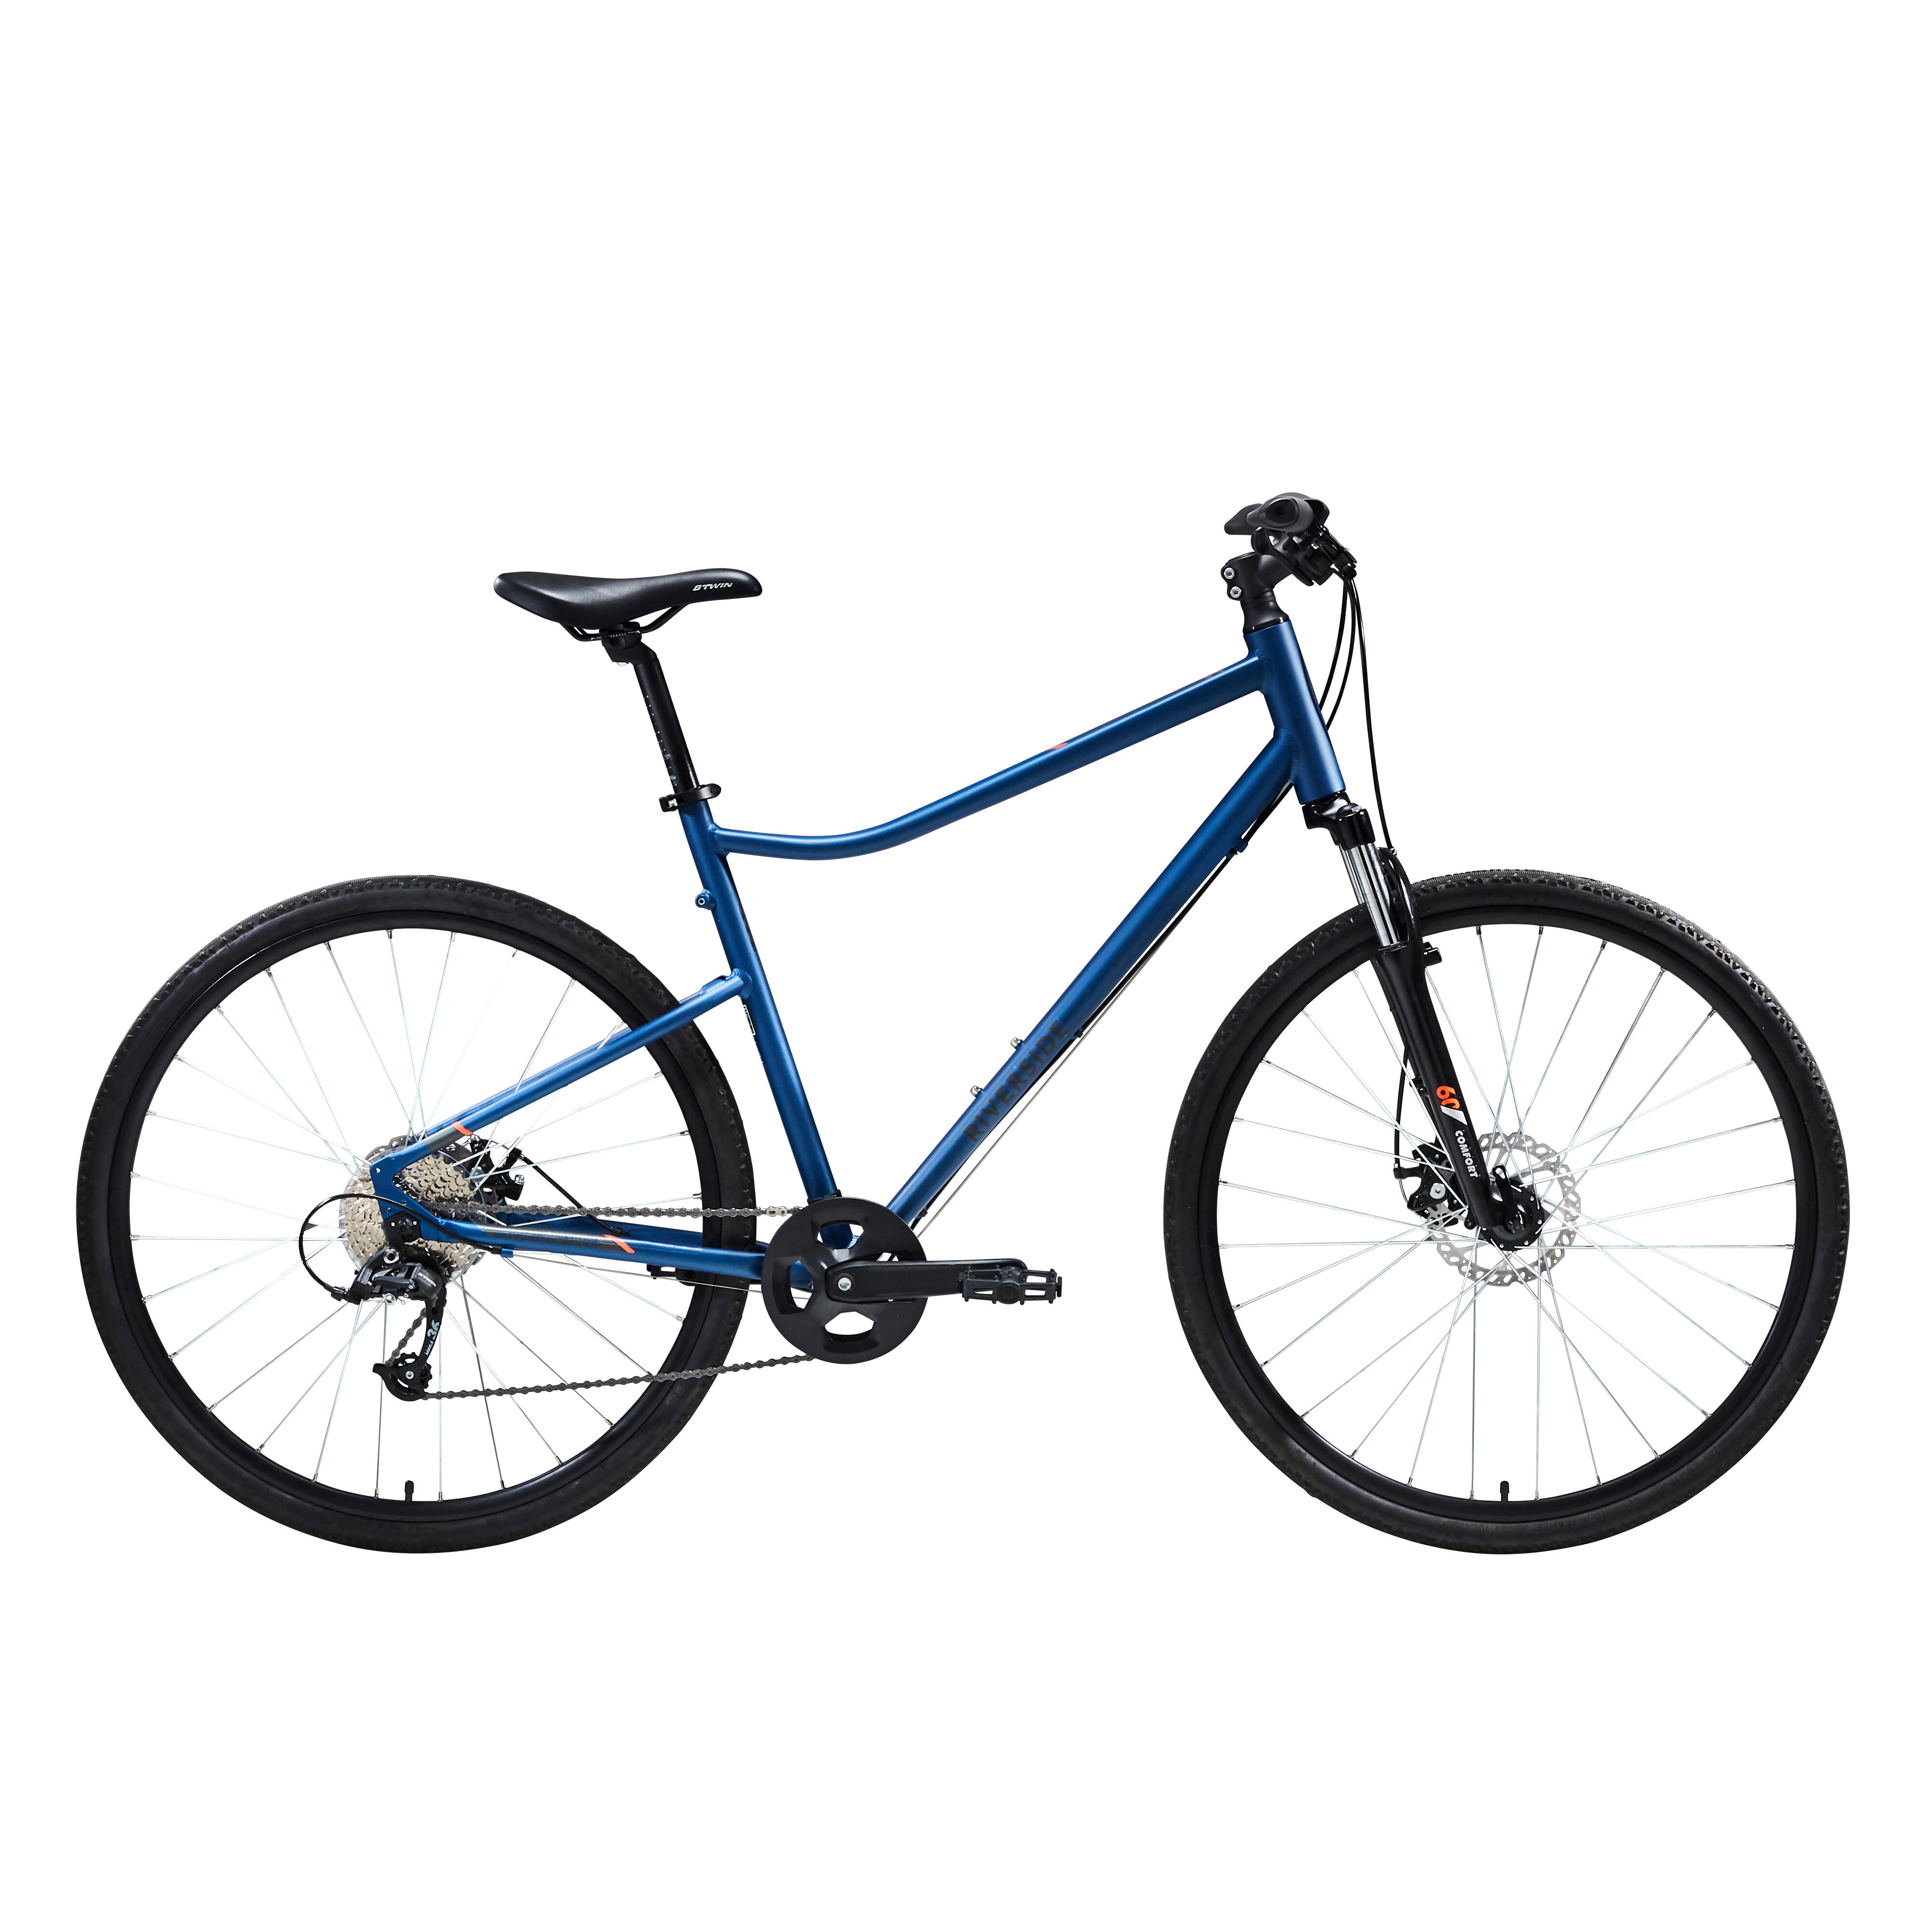 Bicicletă polivalentă Riverside 500 Albastru decathlon.ro